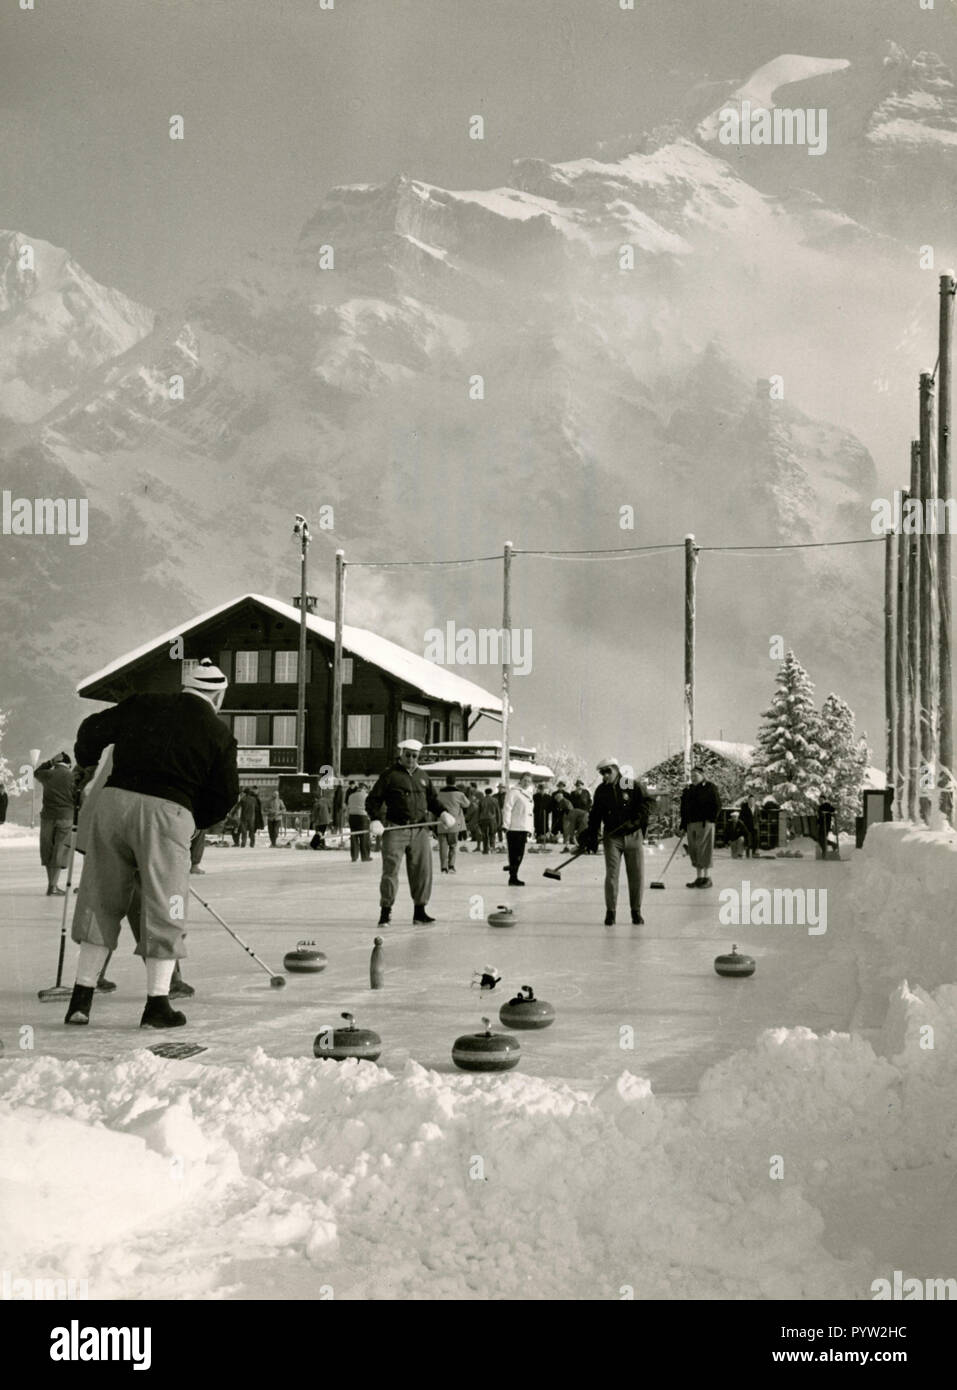 Playing curling, Murren, Switzerland 1950s Stock Photo